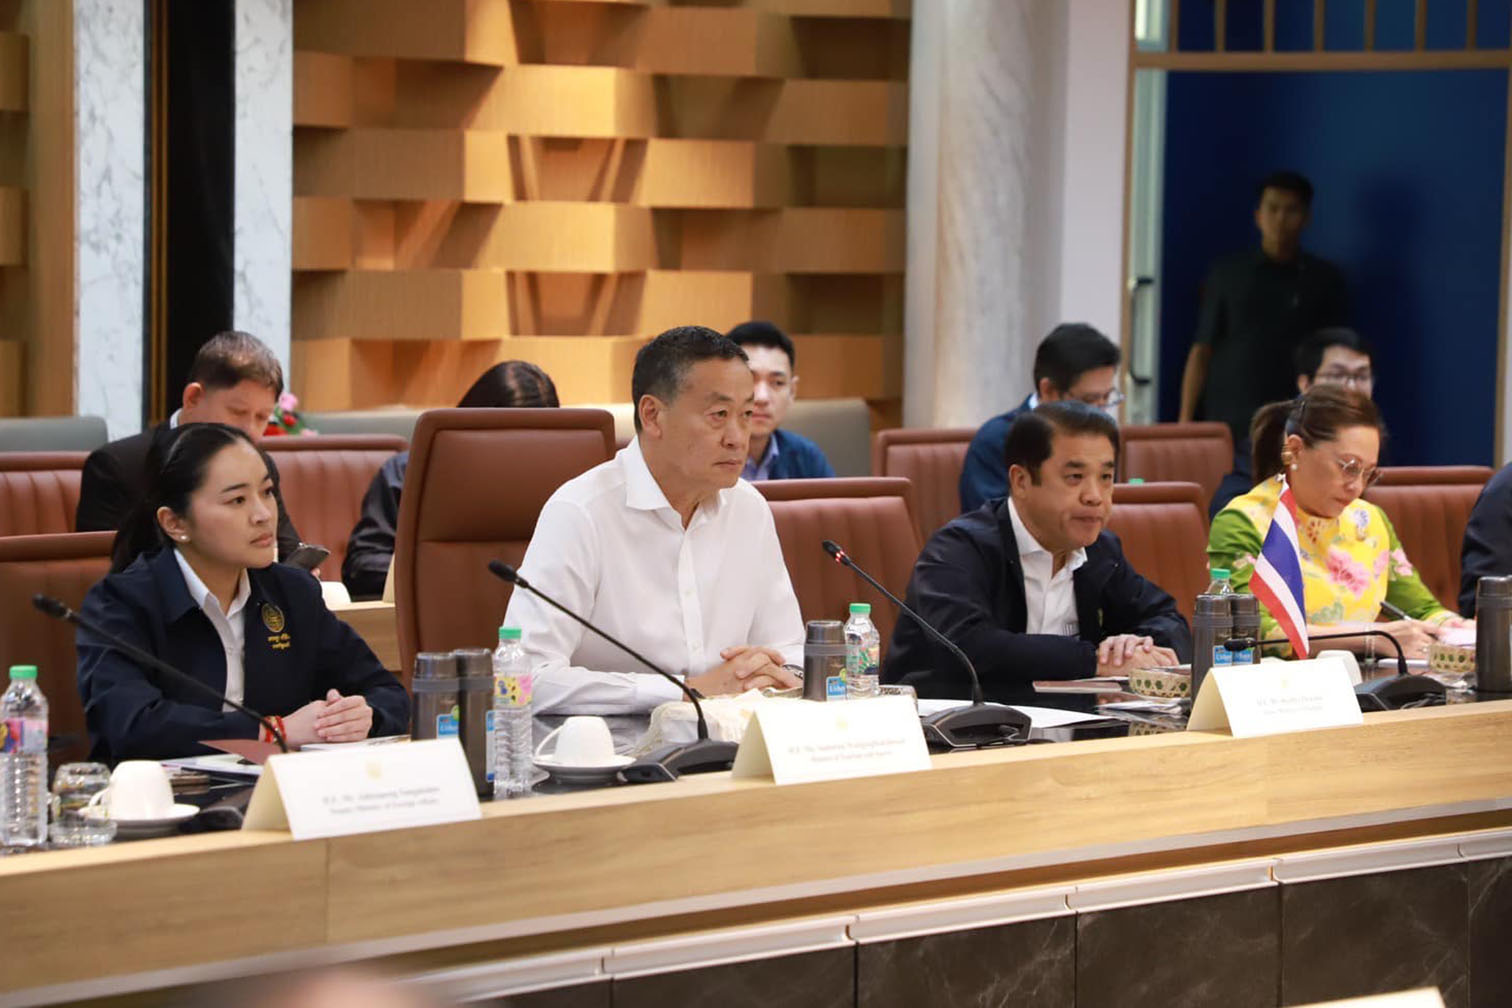 นายกรัฐมนตรีไทย - มาเลเซีย ร่วมผลักดันการค้า เพื่อยกระดับความร่วมมือด้านเศรษฐกิจ พร้อมติดตามโครงการเชื่อมด่านสะเดาแห่งใหม่